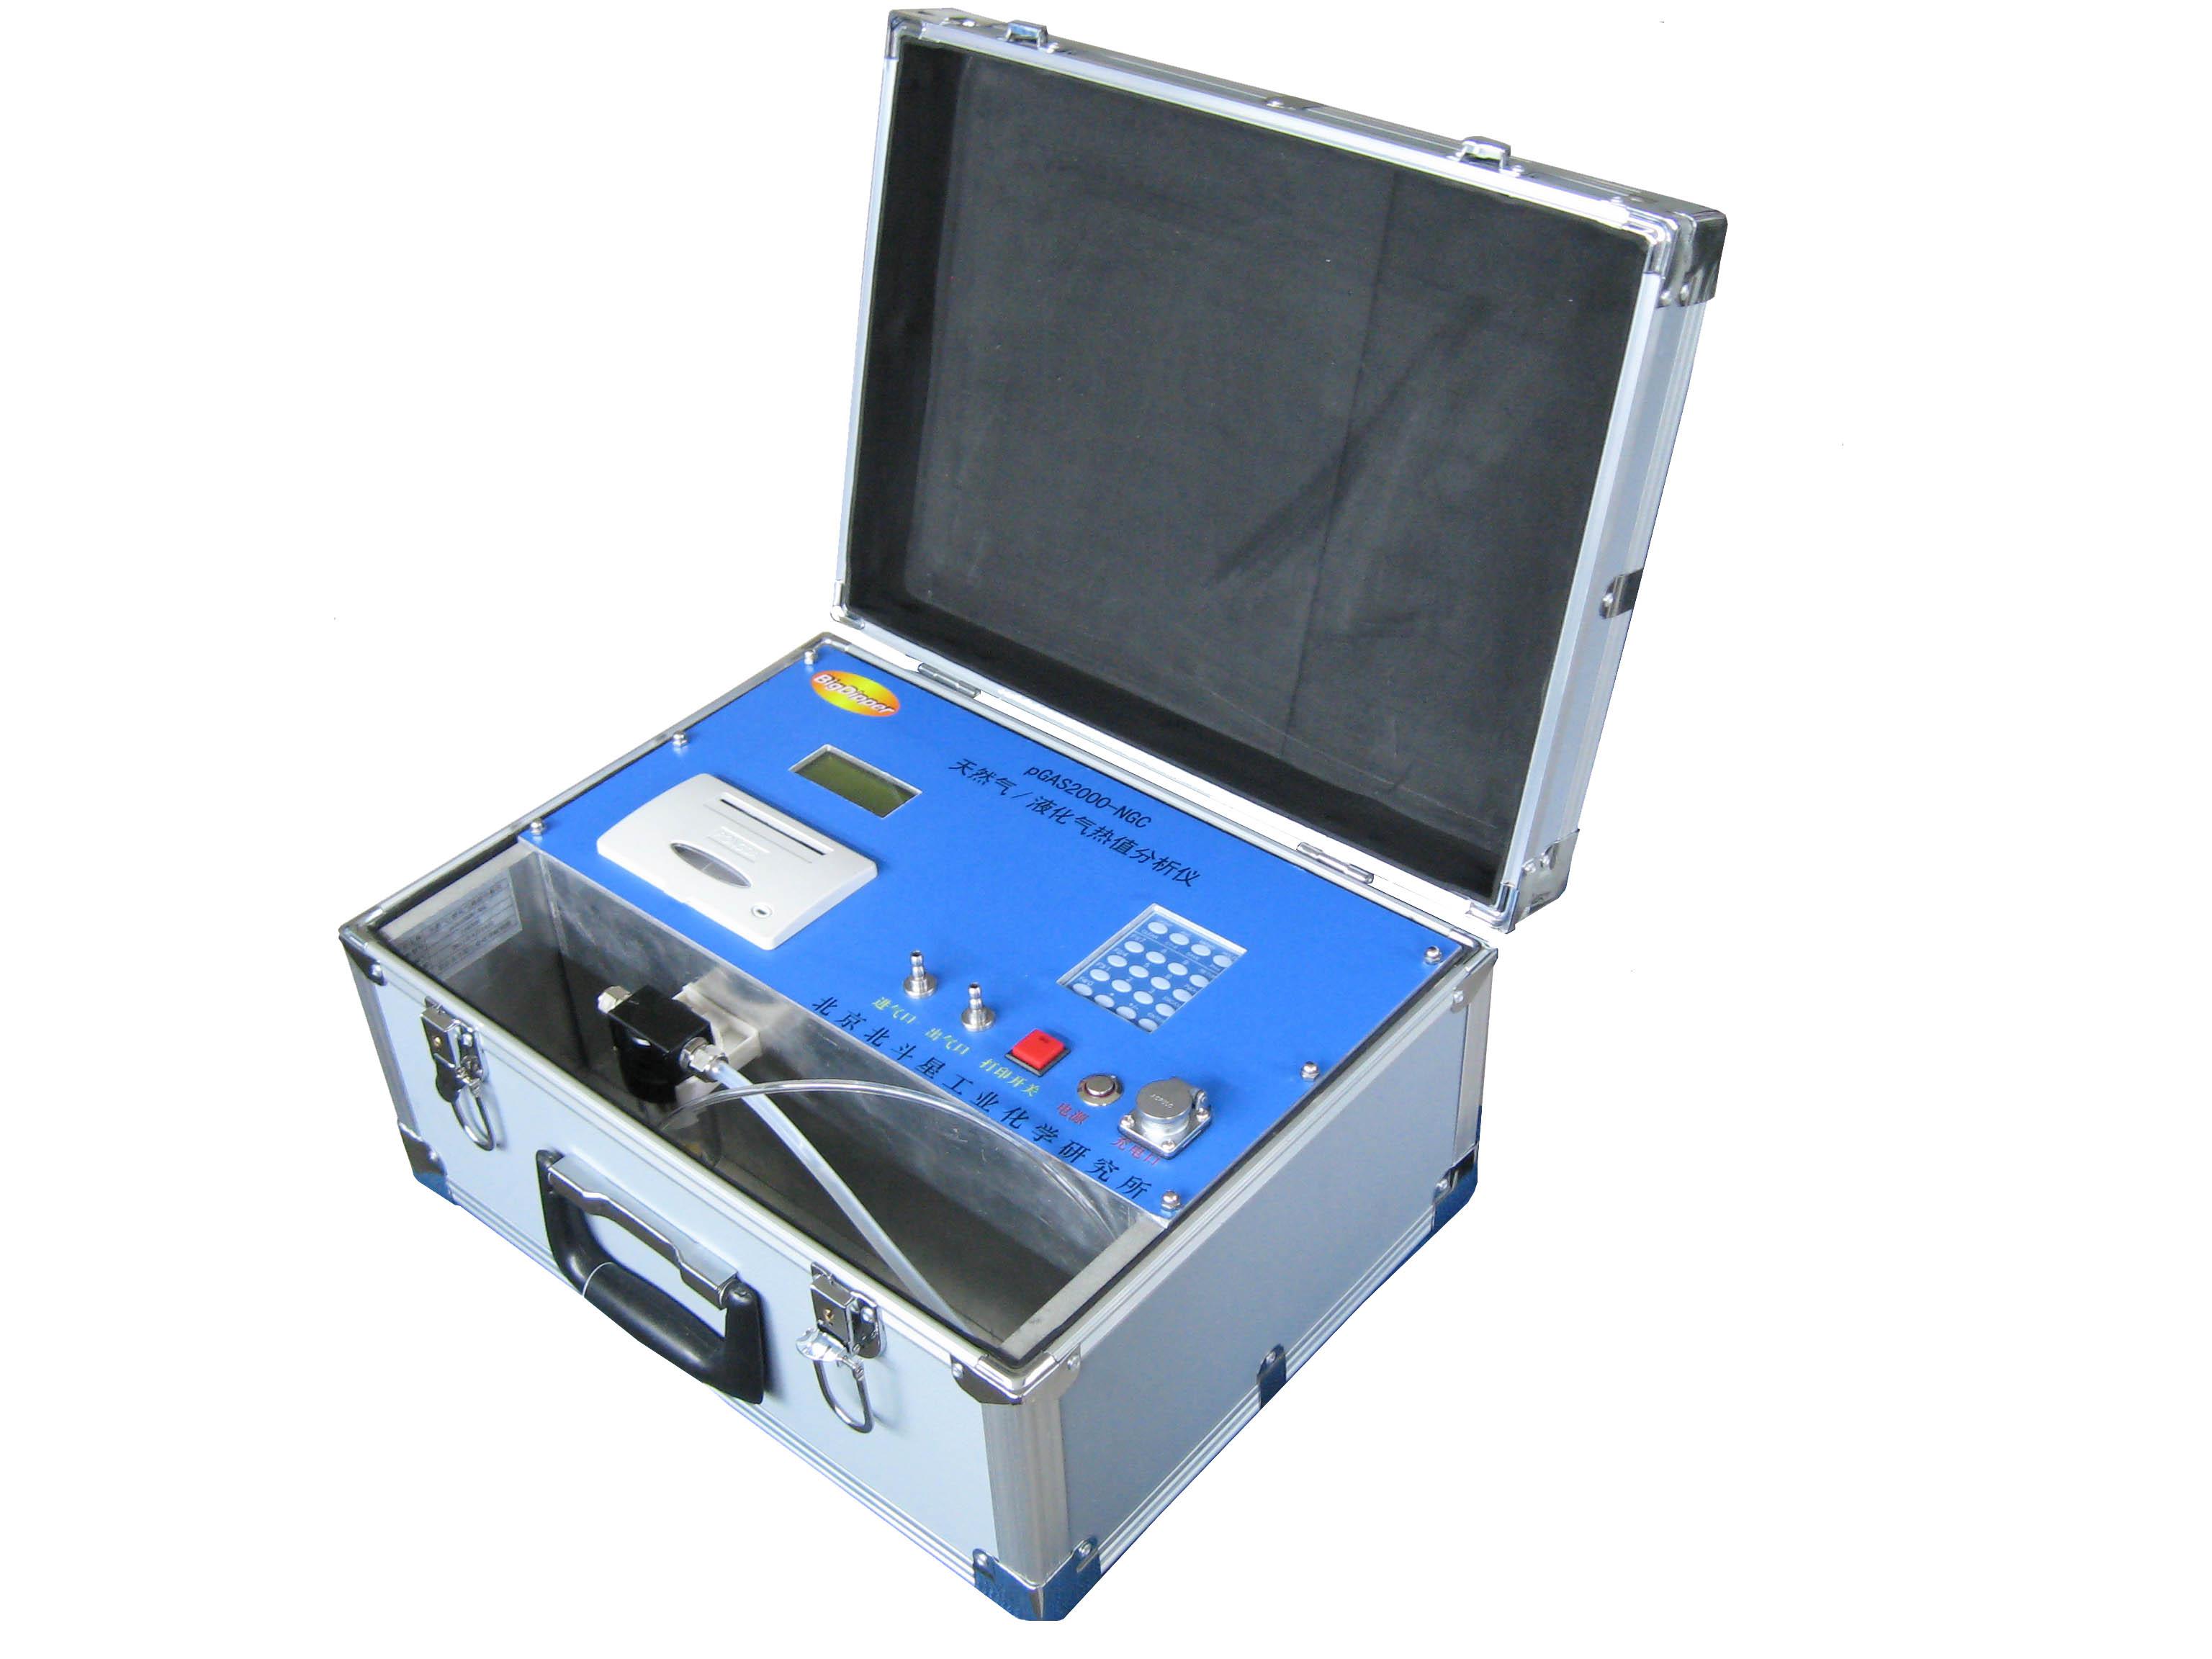 专业实用型pGas2000-NG便携式天燃气/液化气热值分析仪北斗星